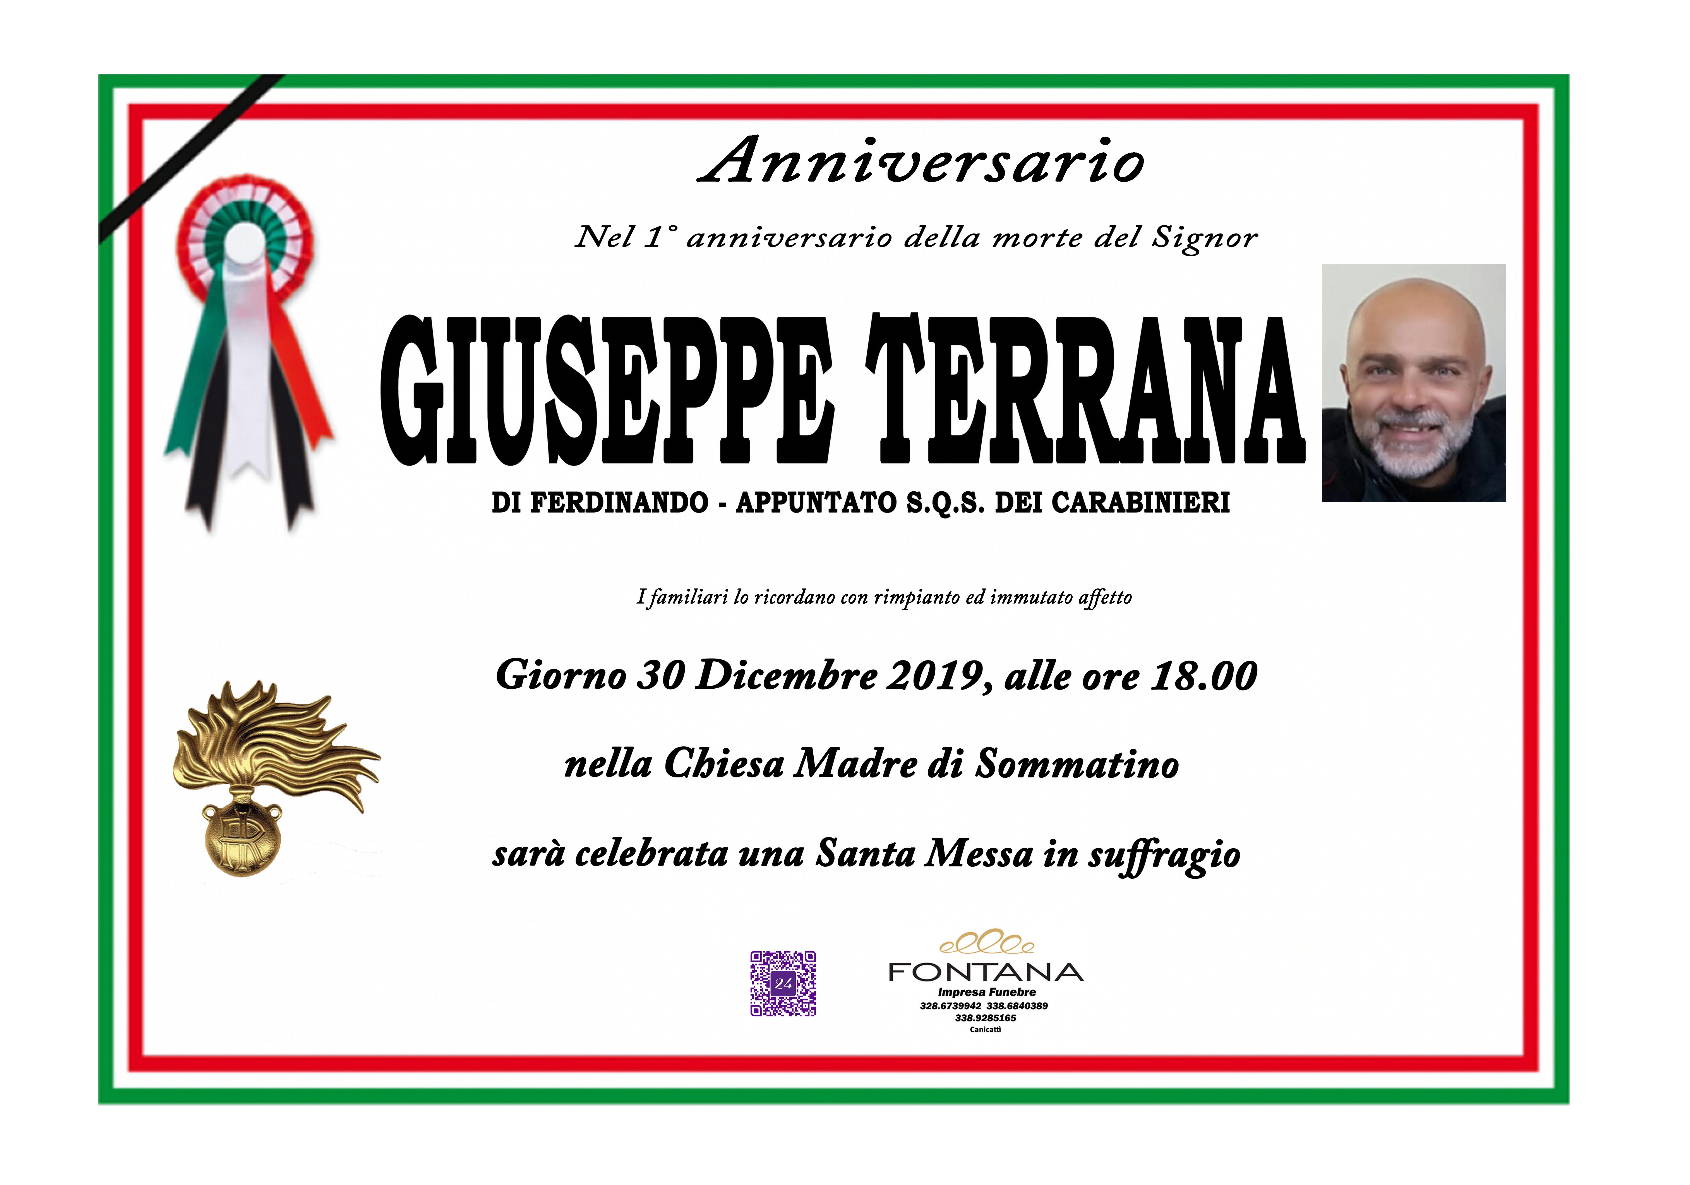 Giuseppe Terrana